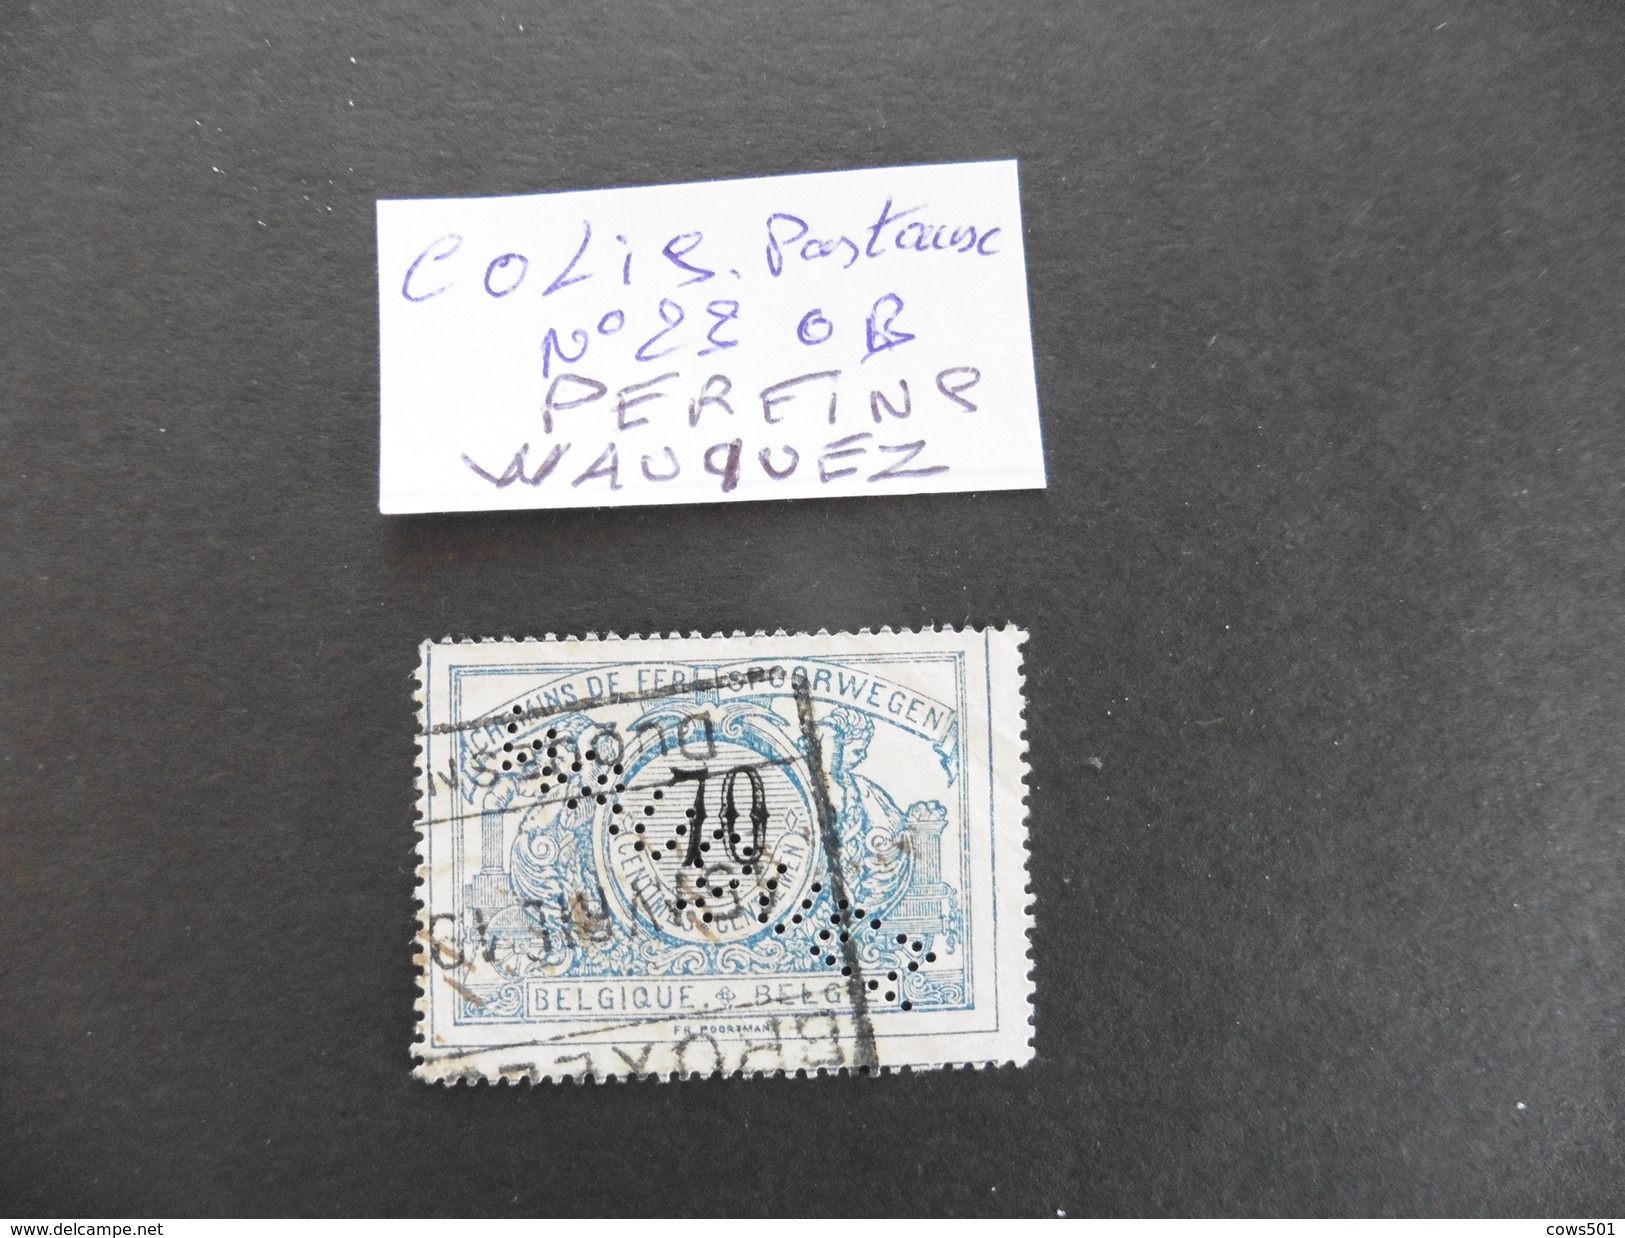 Belgique :Perfins :timbre Colis Postaux N°23  Perforé WAUQUEZ - Unclassified